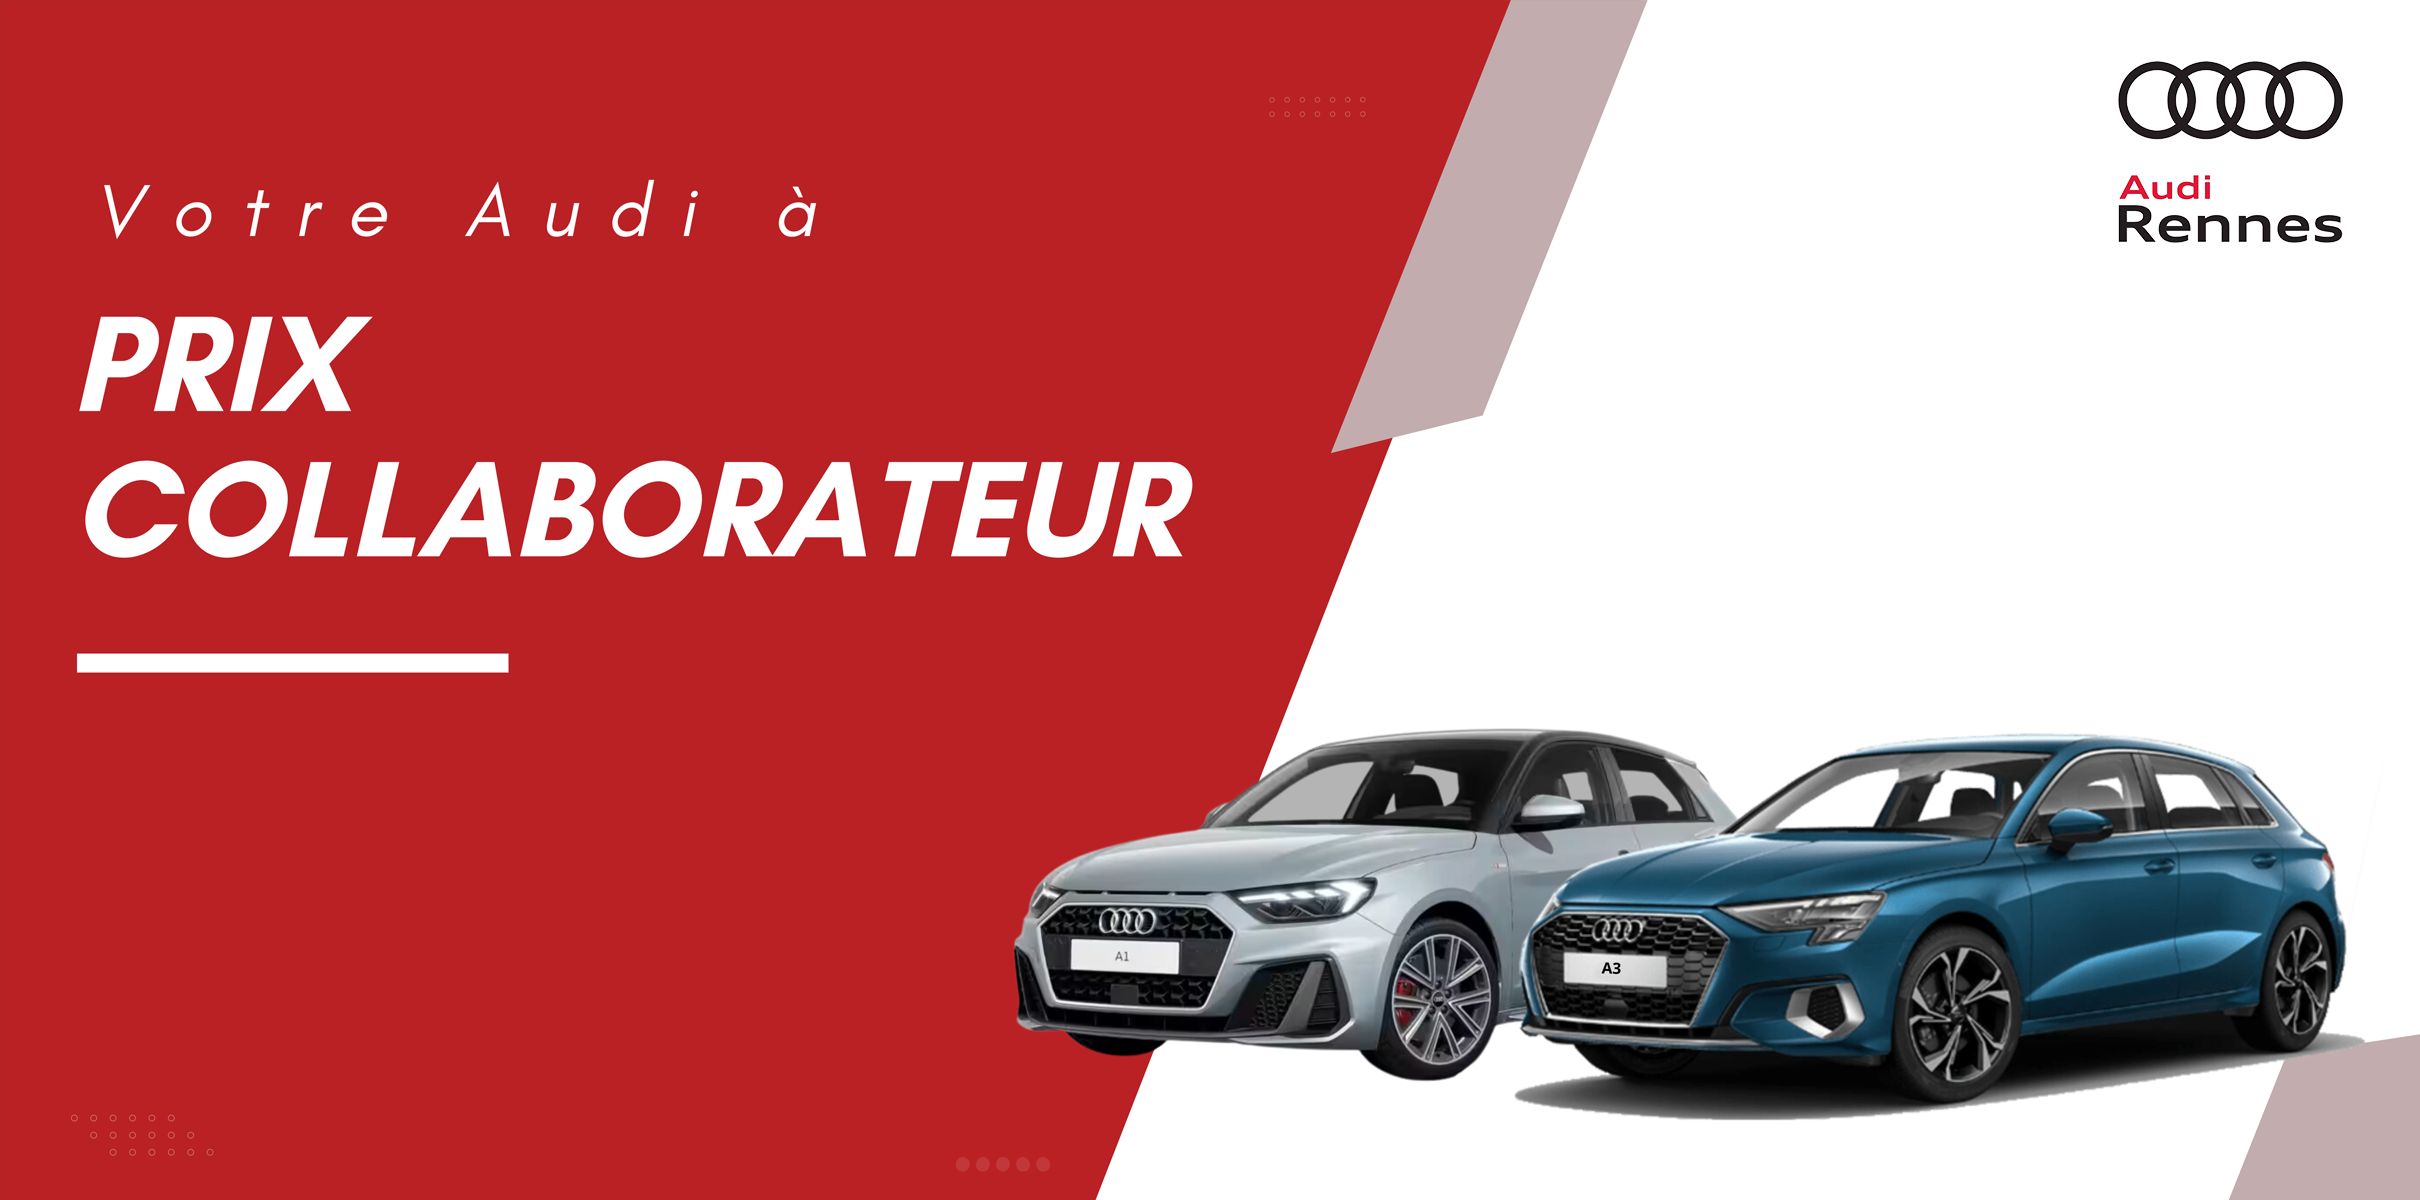 OLYMPE AUTOMOBILES - En juin, votre Audi à prix collaborateur !